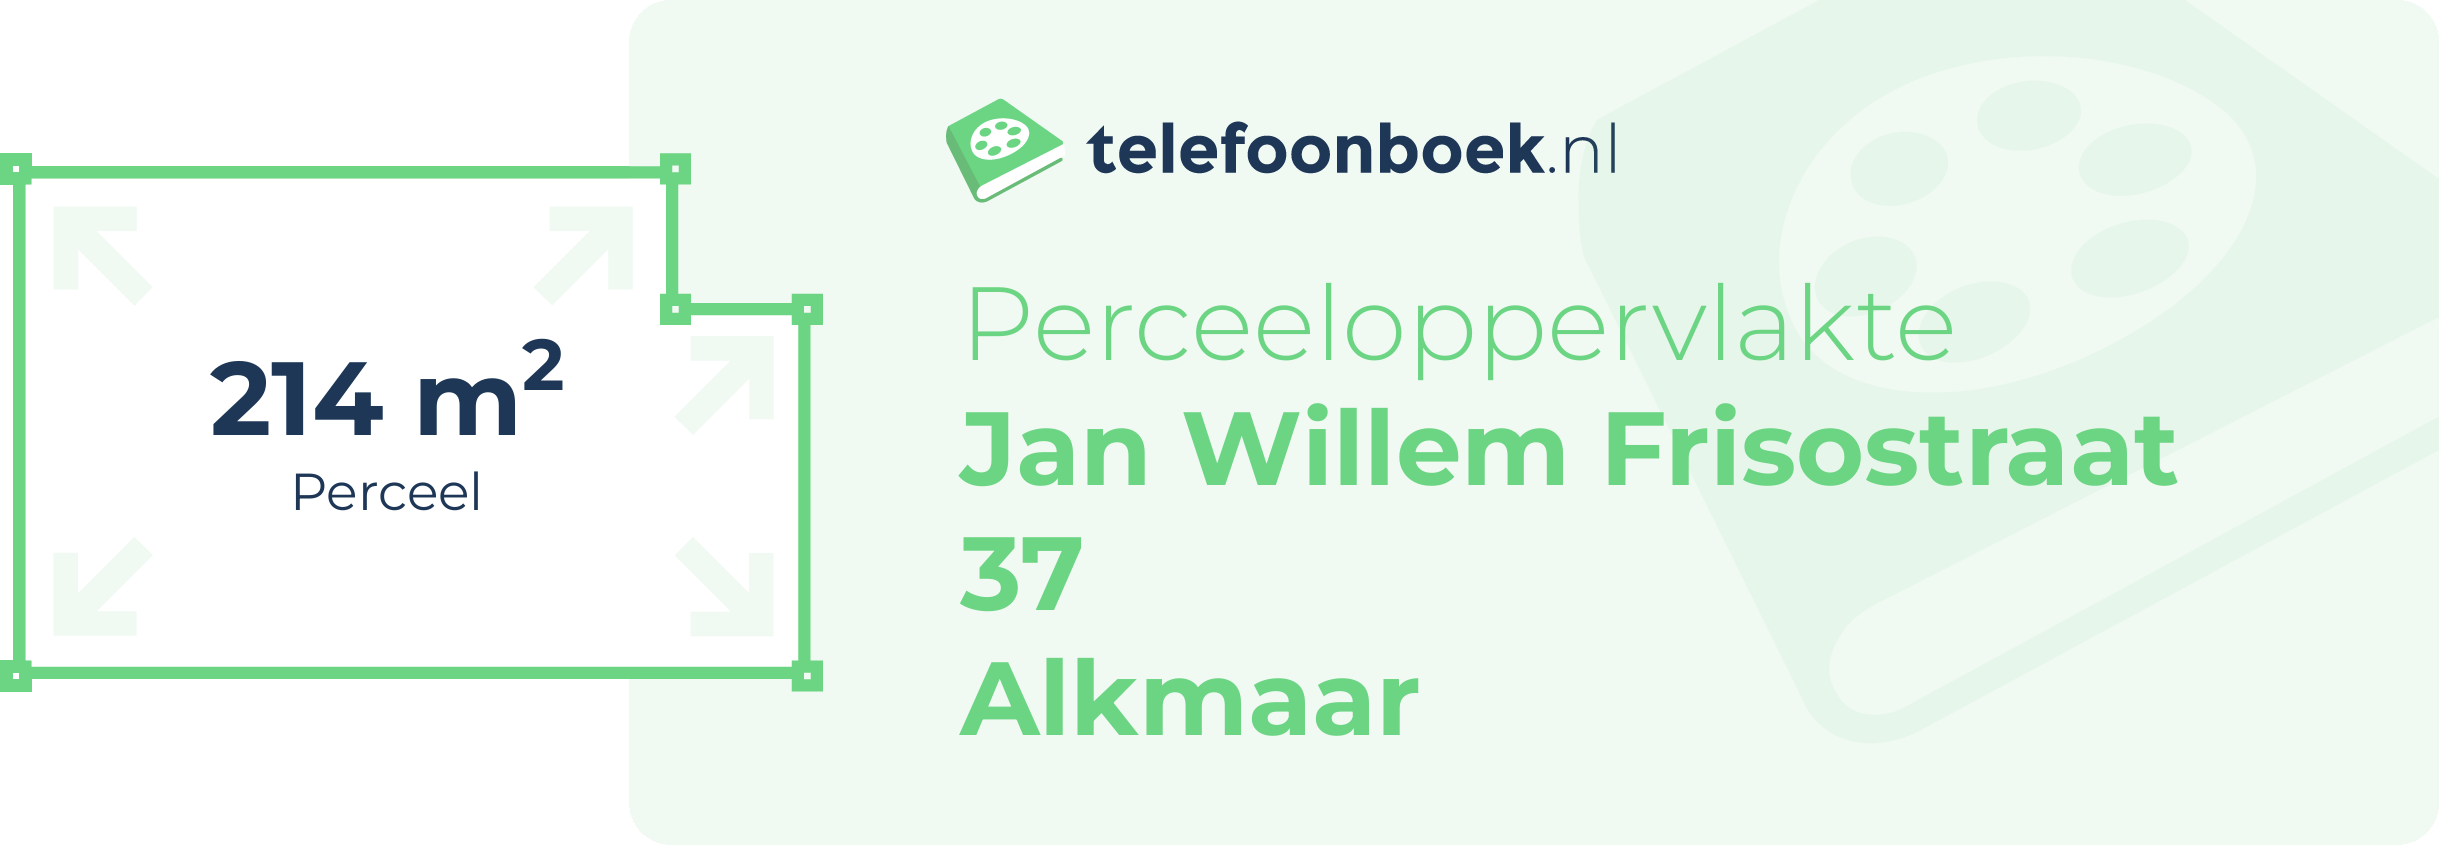 Perceeloppervlakte Jan Willem Frisostraat 37 Alkmaar